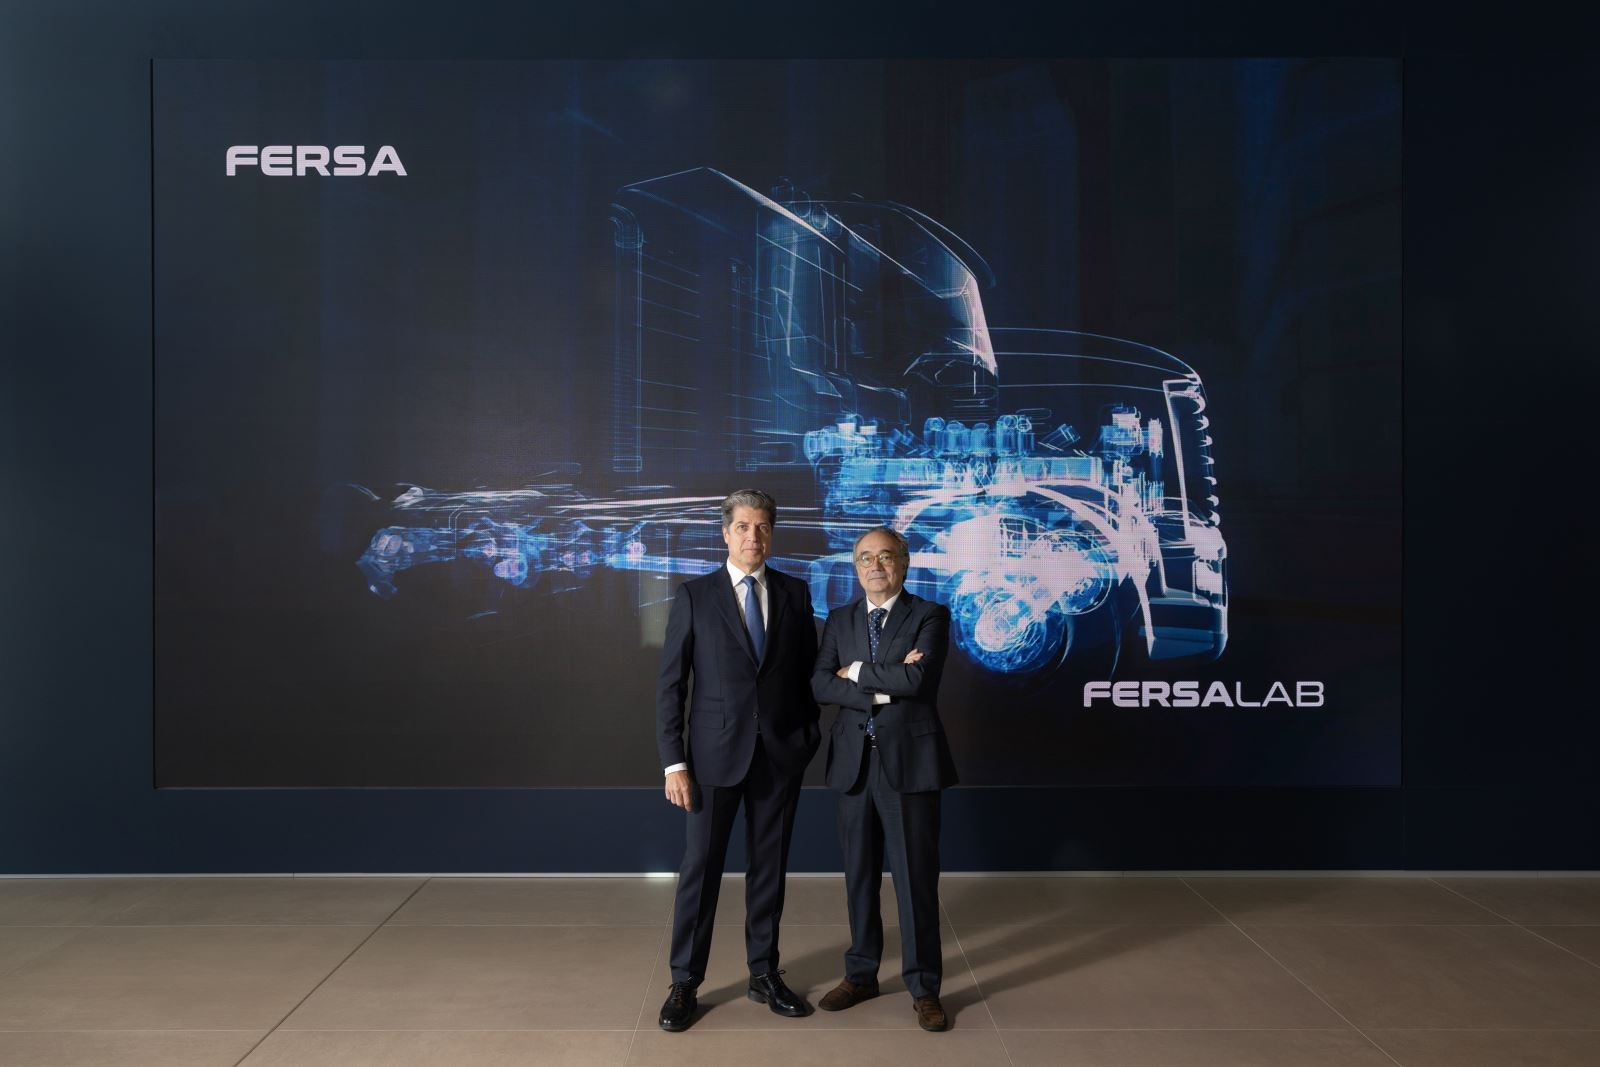 La multinacional aragonesa FERSA ha designado a Rafael Paniagua como nuevo CEO de la compañía, con el propósito de “mantener y potenciar el crecimiento exponencial que venía experimentando Fersa en los últimos años”.